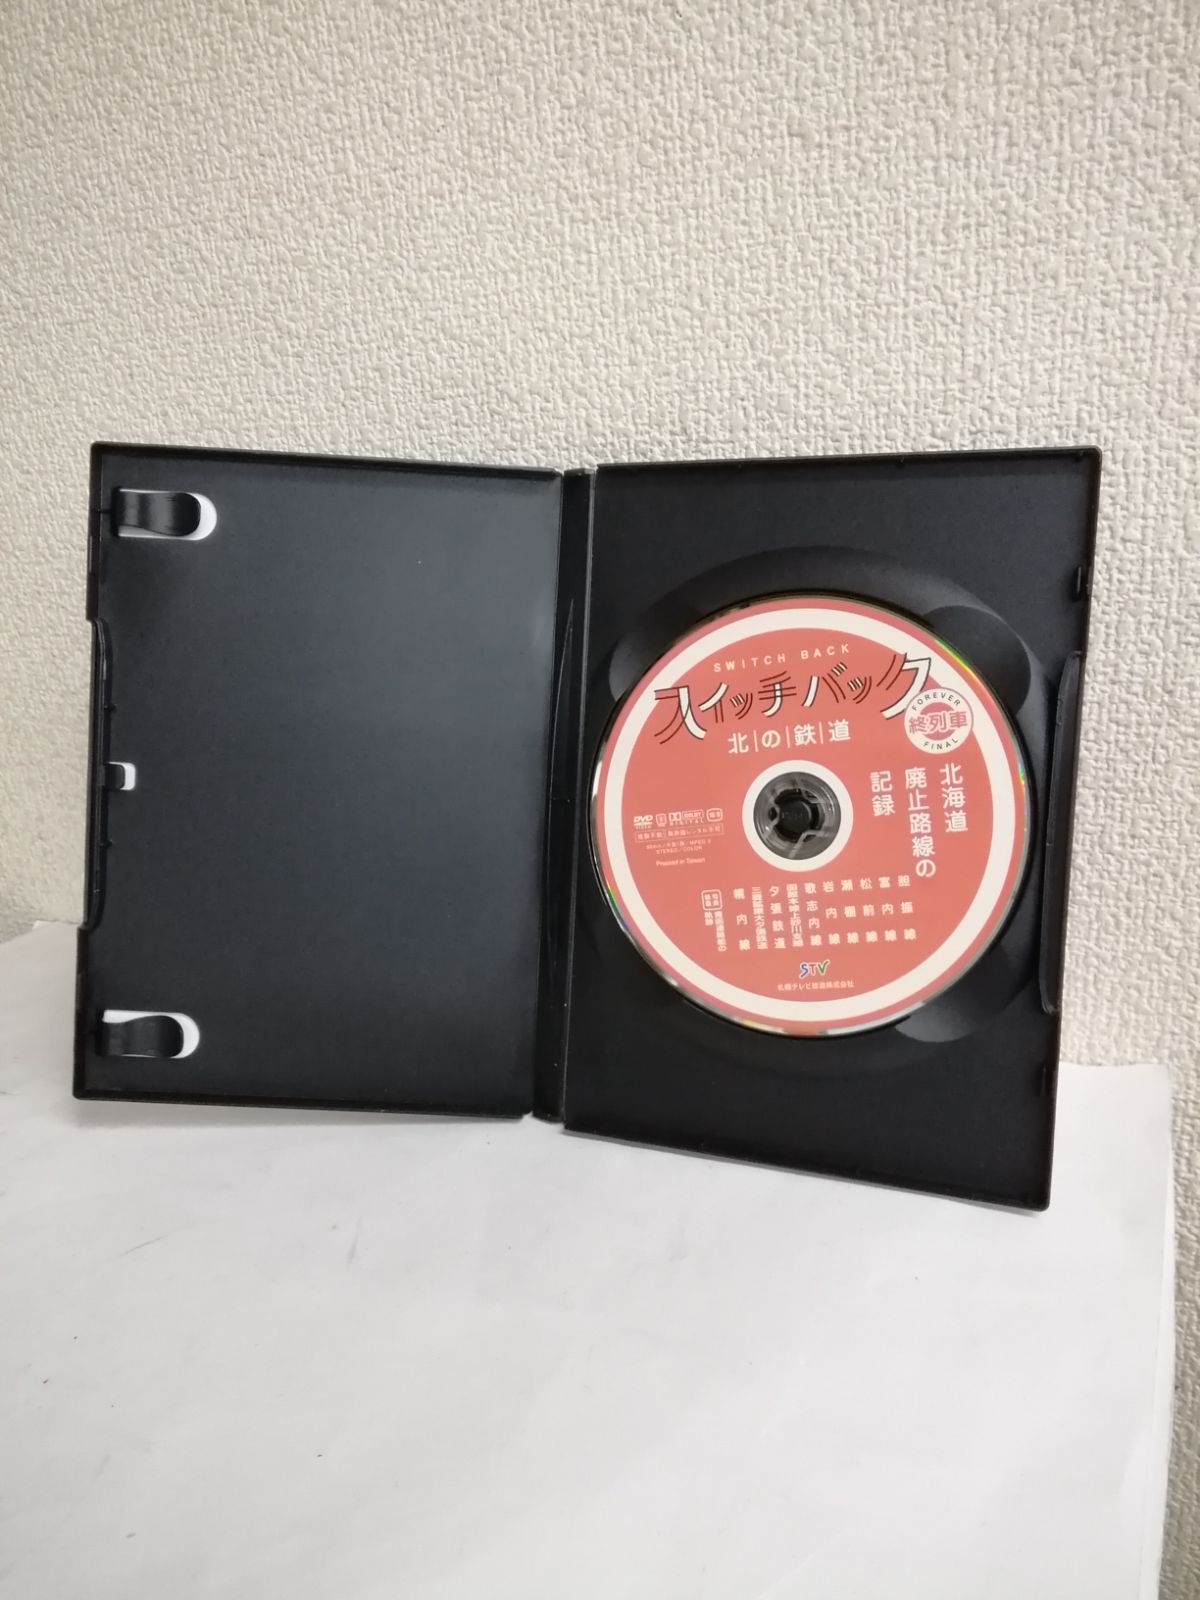 スイッチバック 北の鉄道 北海道廃止路線の記録 終列車 DVD